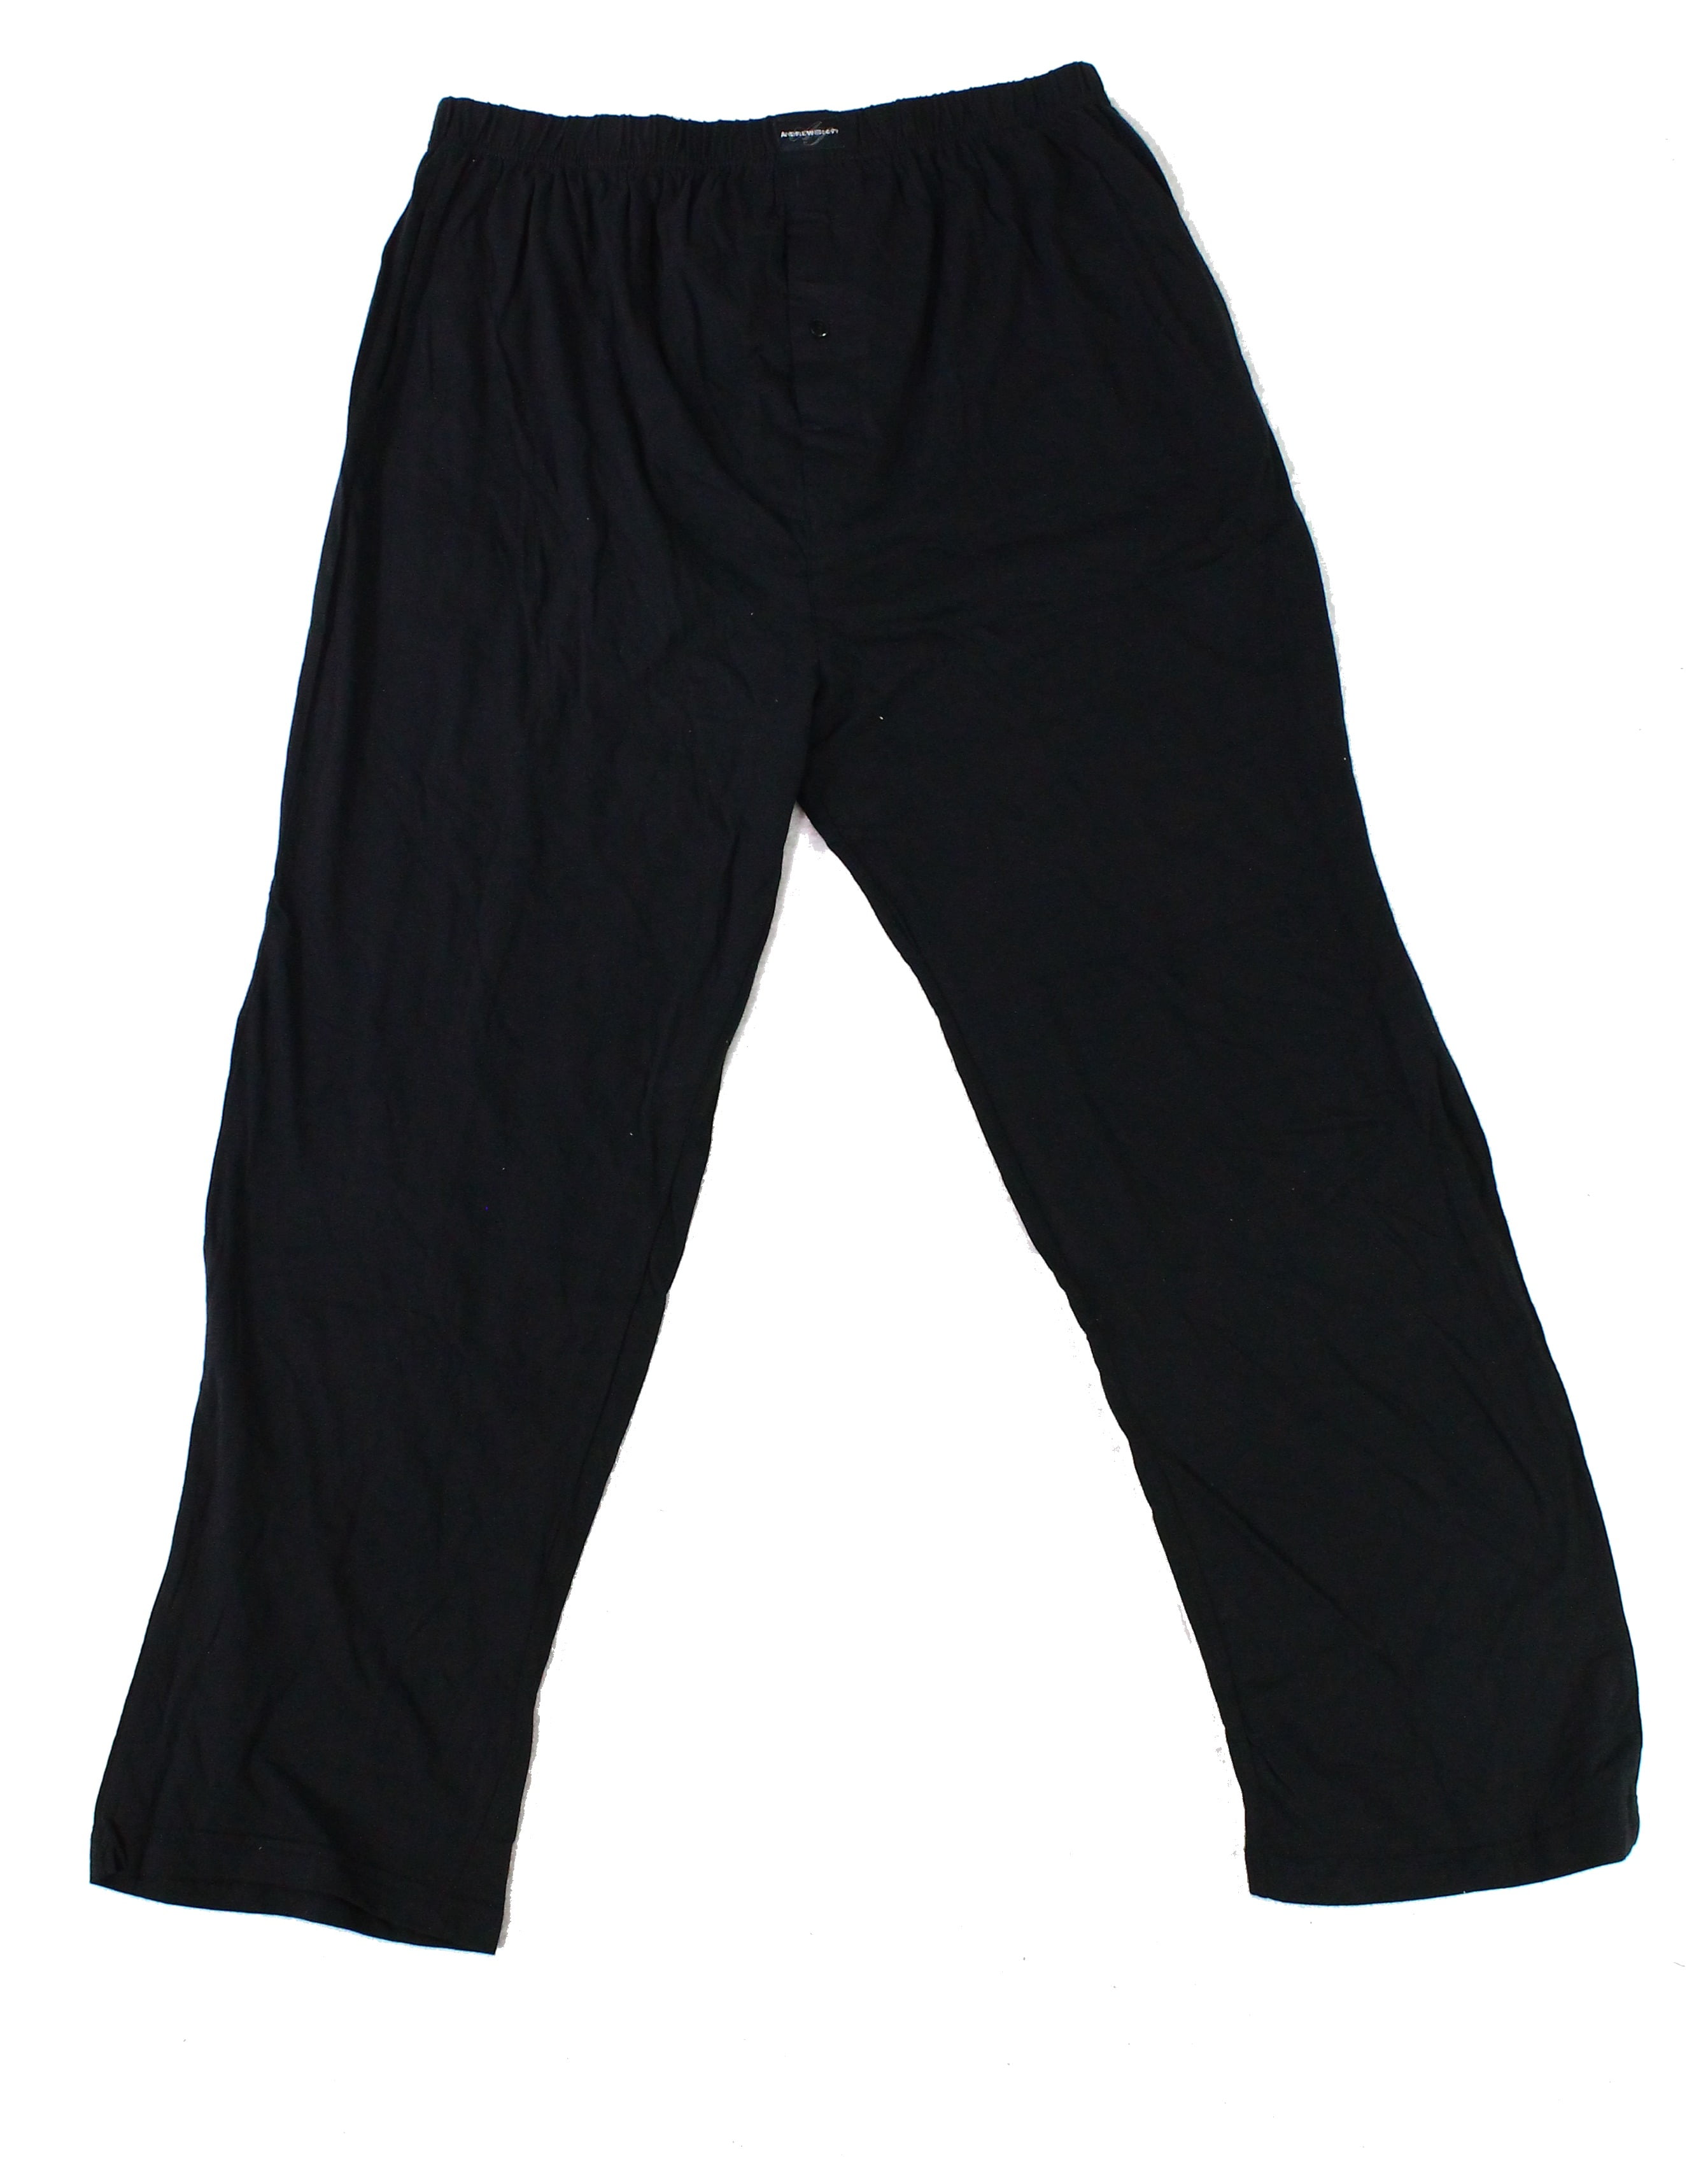 Andrew Scott Sleepwear & Robes - Mens Sleepwear Lounge Pants Three Pack ...